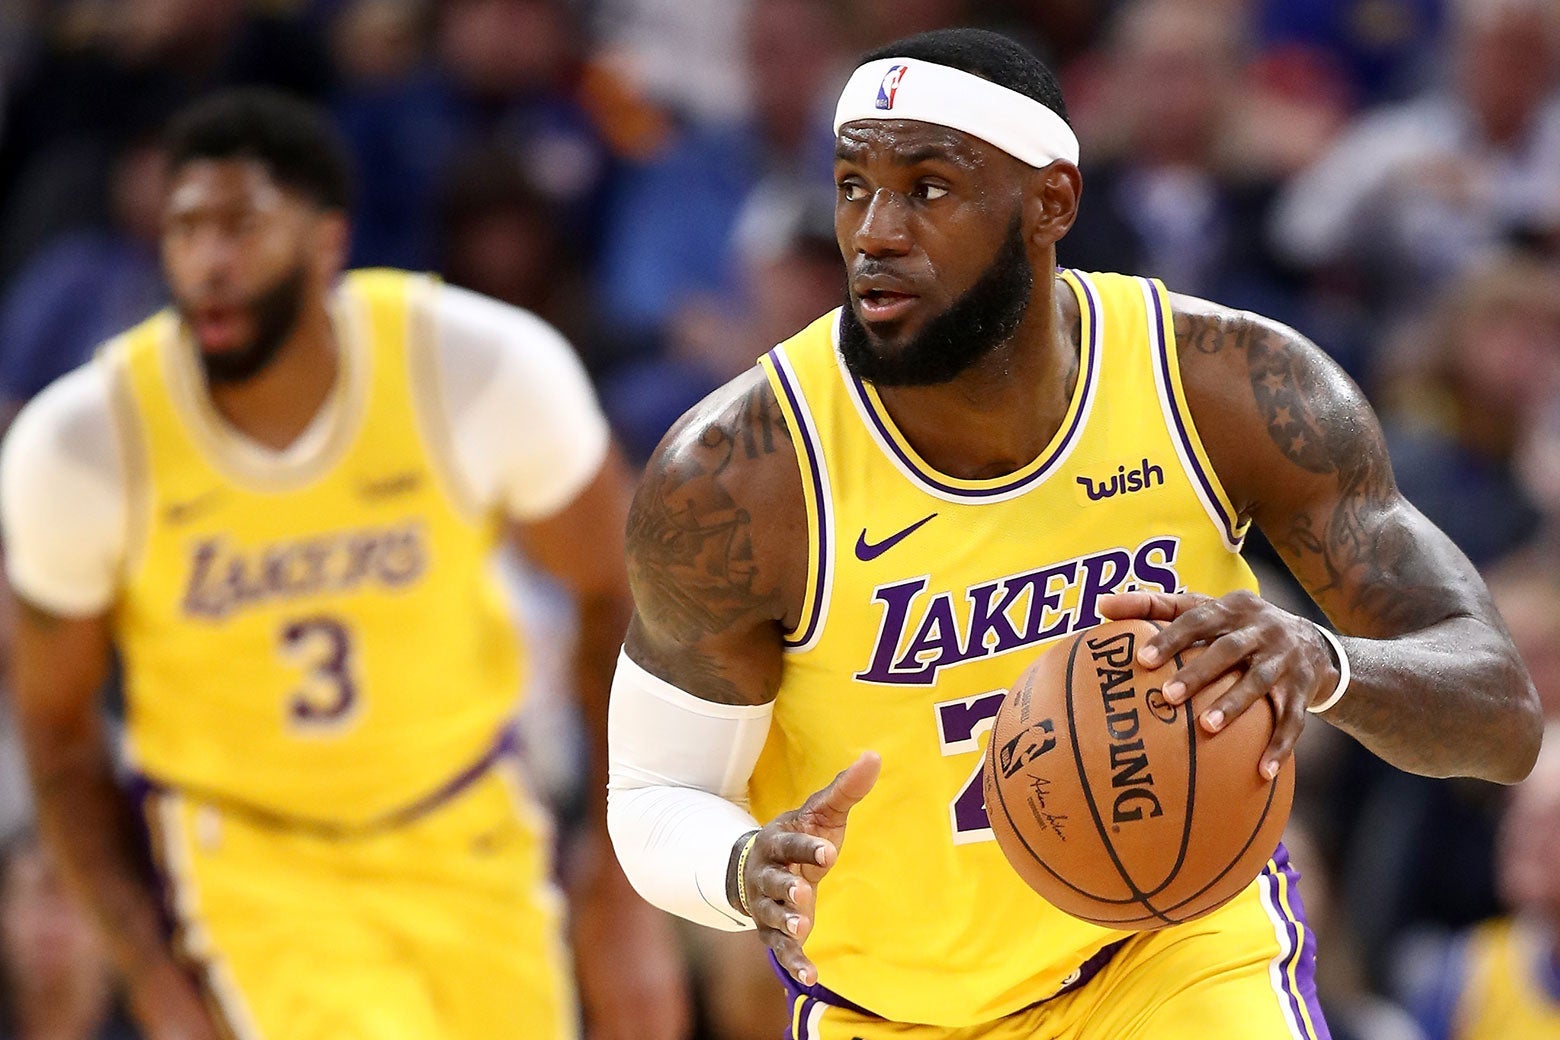 Lakers' NBA win draws big television ratings